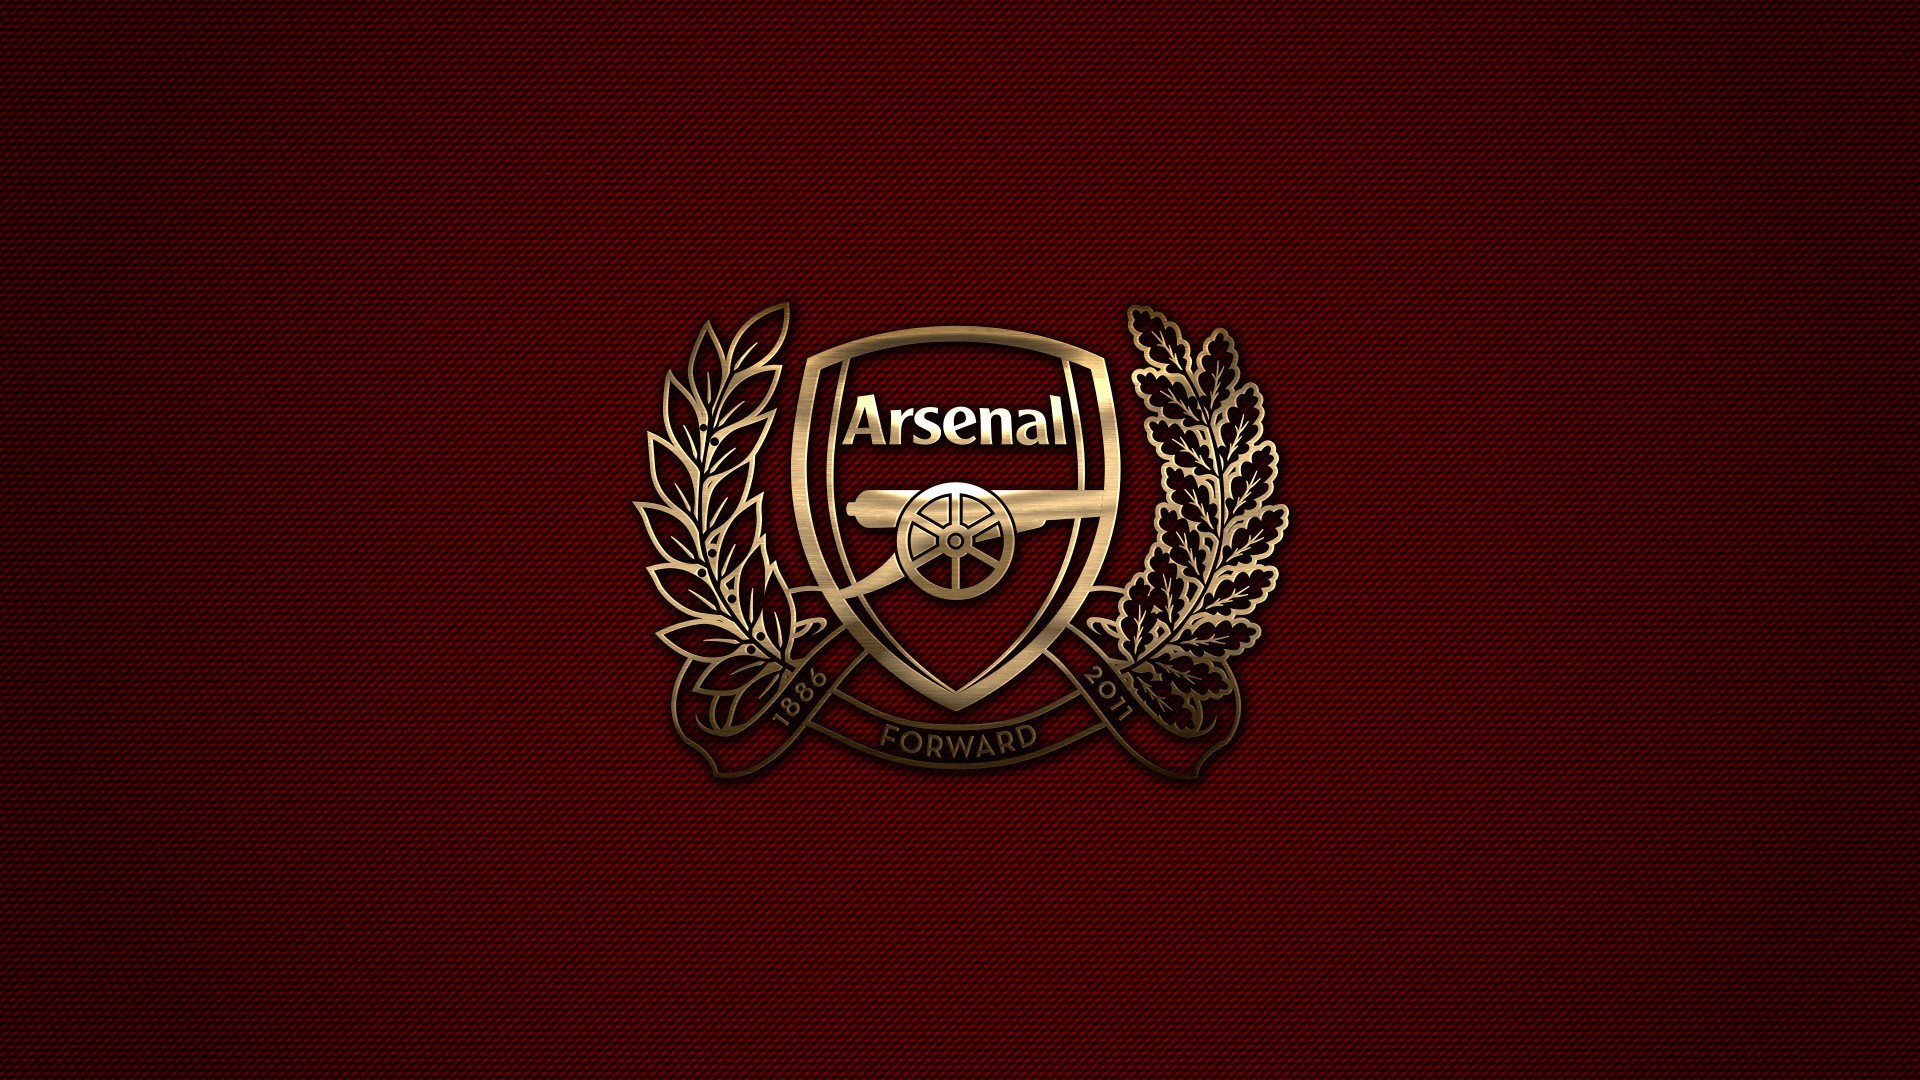 Arsenal London Arsenal Fc Premier League Sports Club 1920x1080